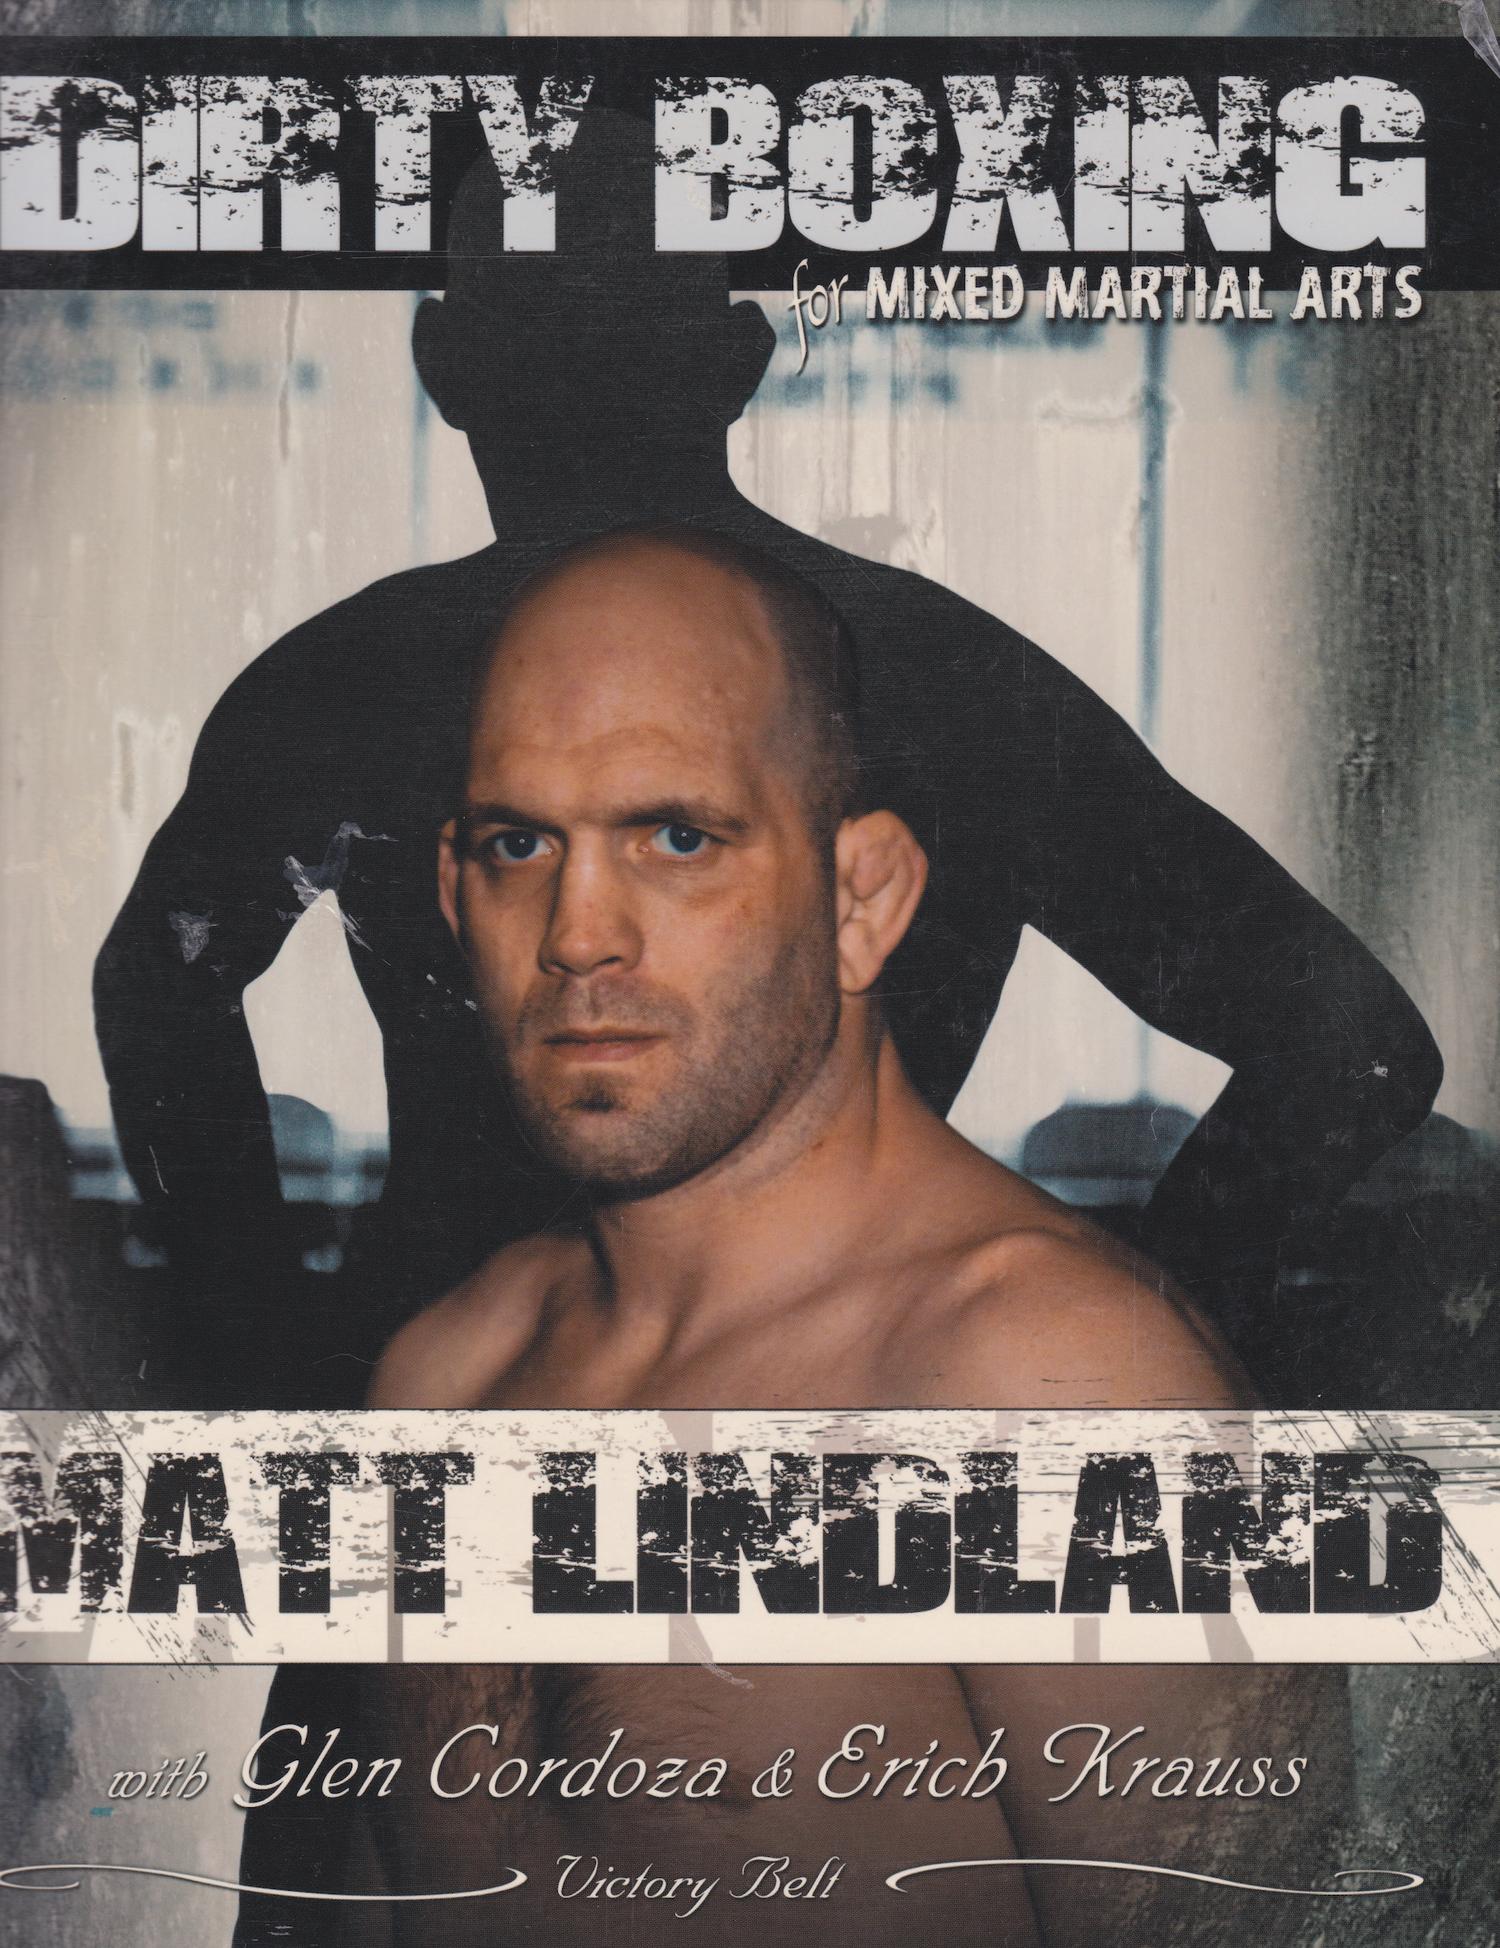 Boxeo sucio para artes marciales mixtas: de la lucha libre a las MMA por Matt Lindland (usado) 